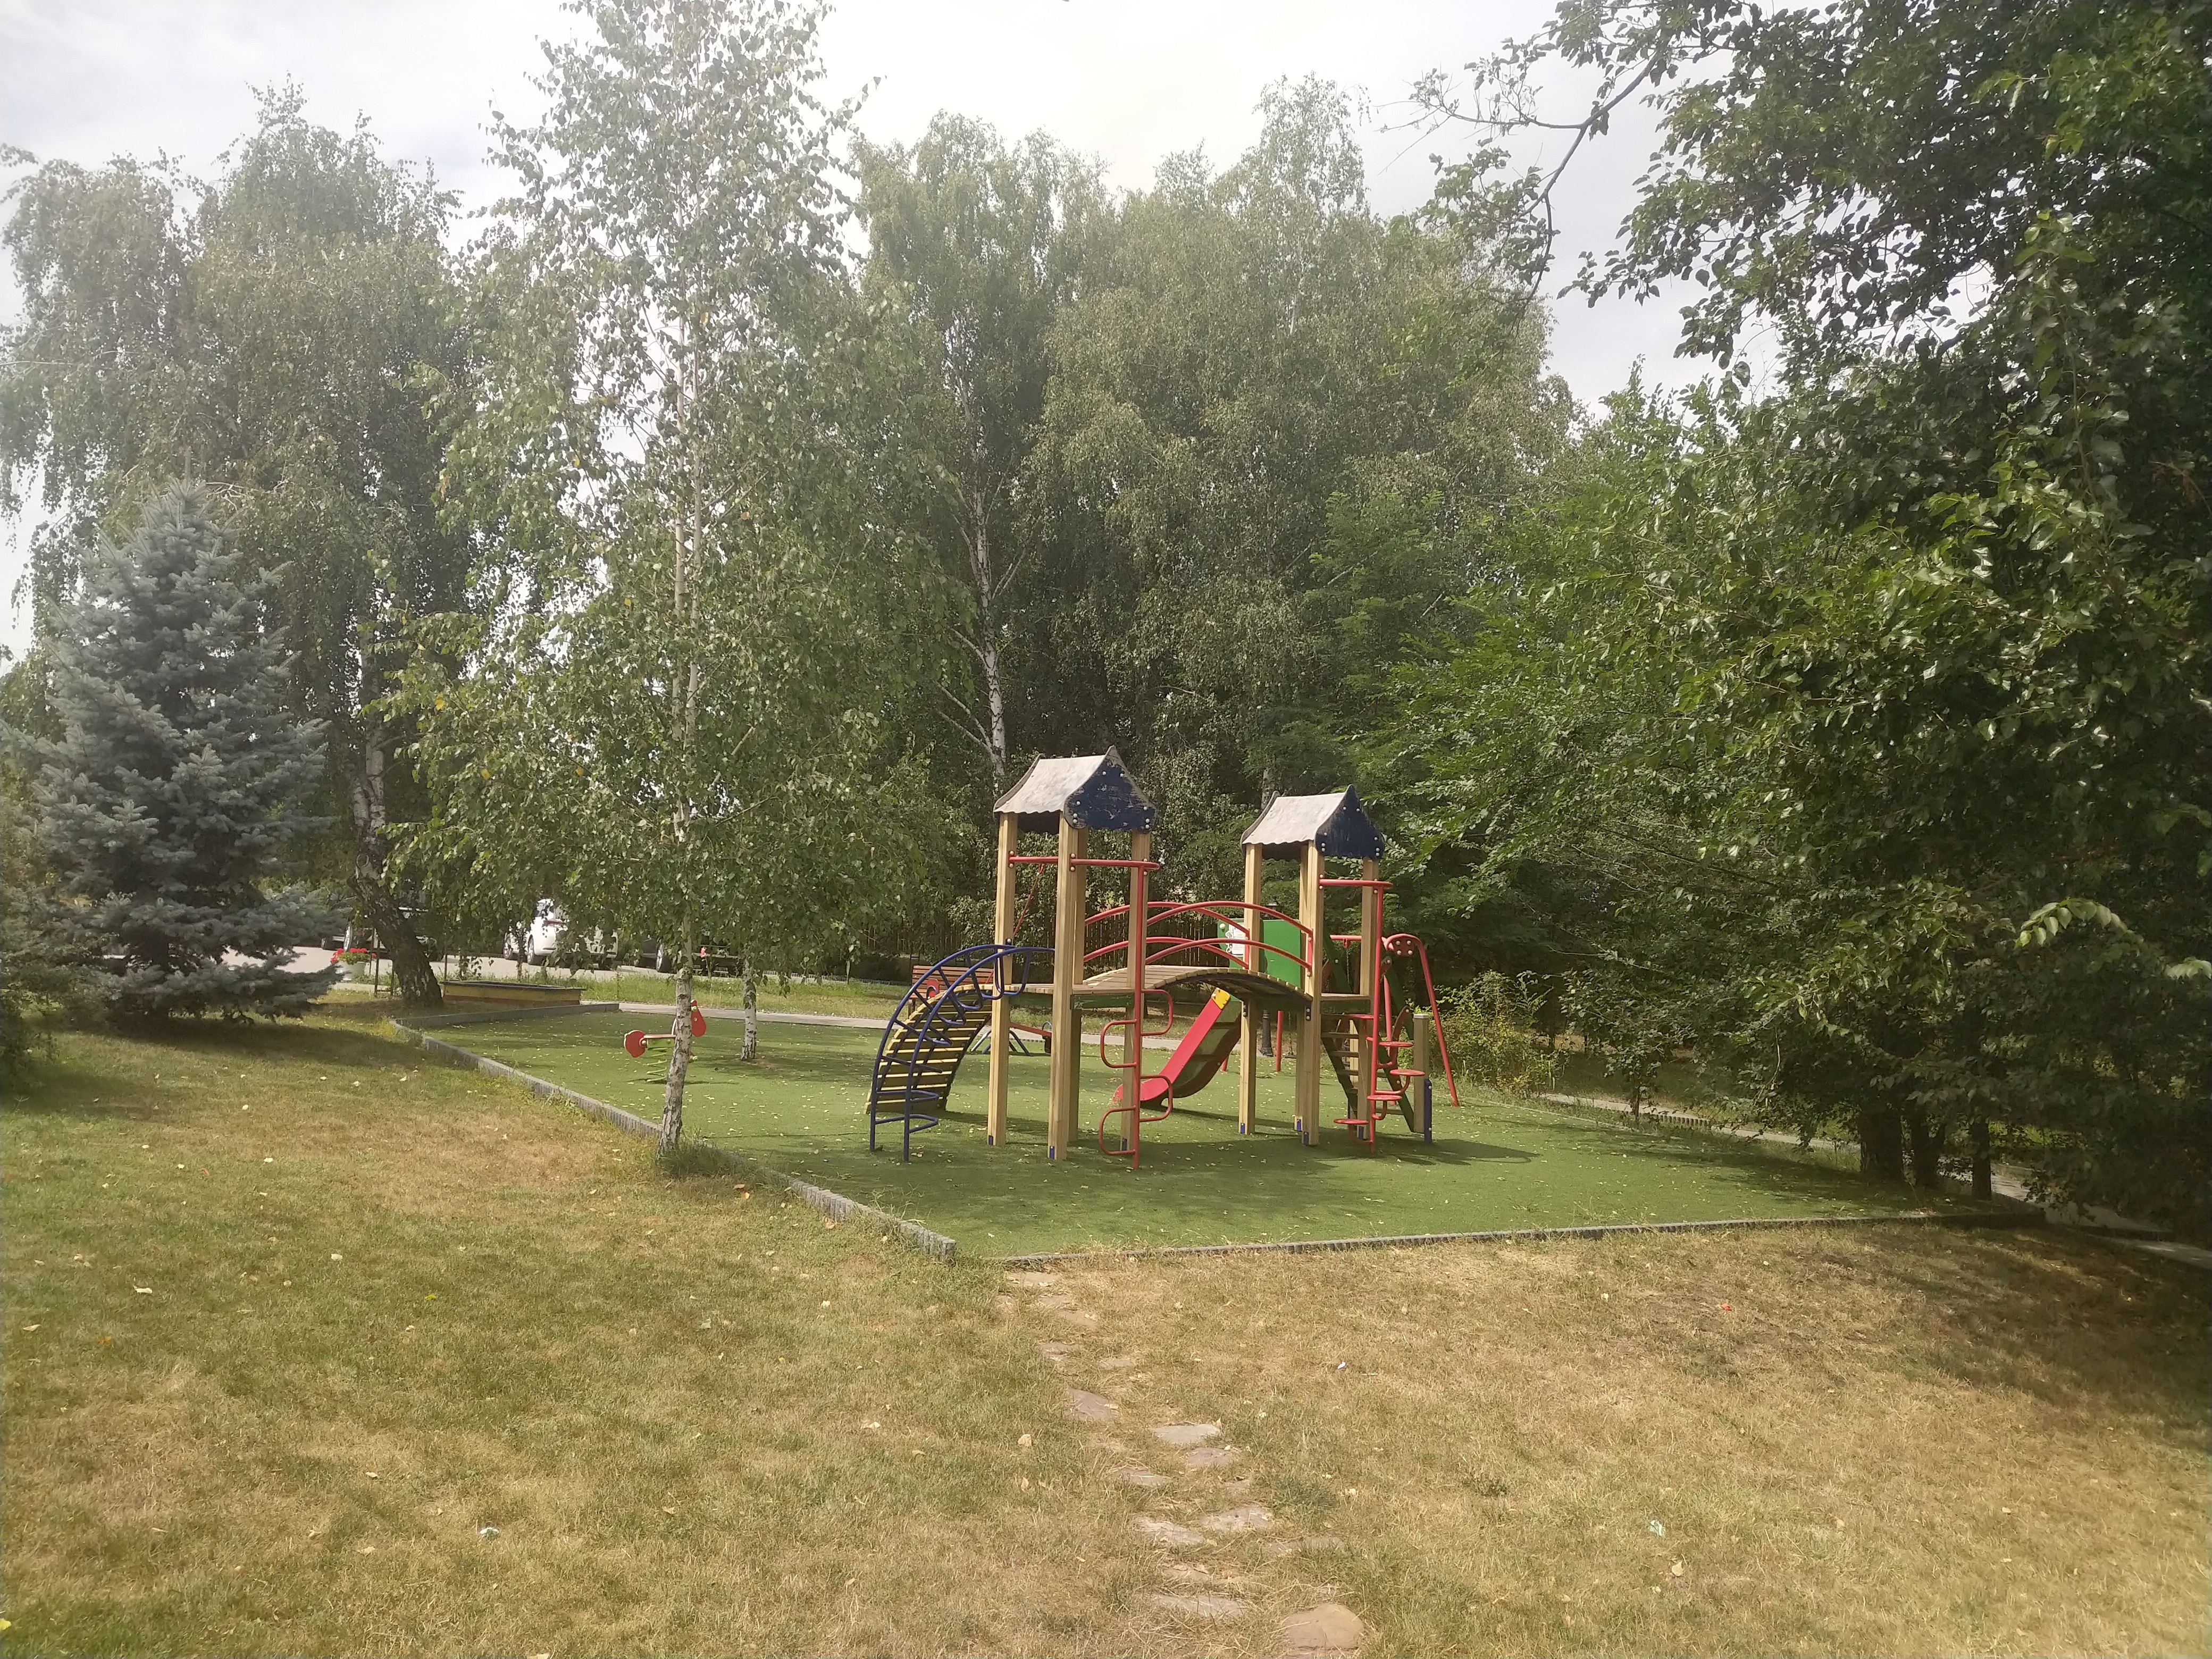 MD, District Criuleni, Satul Magdacesti, Teren de joacă pentru copii la International Park